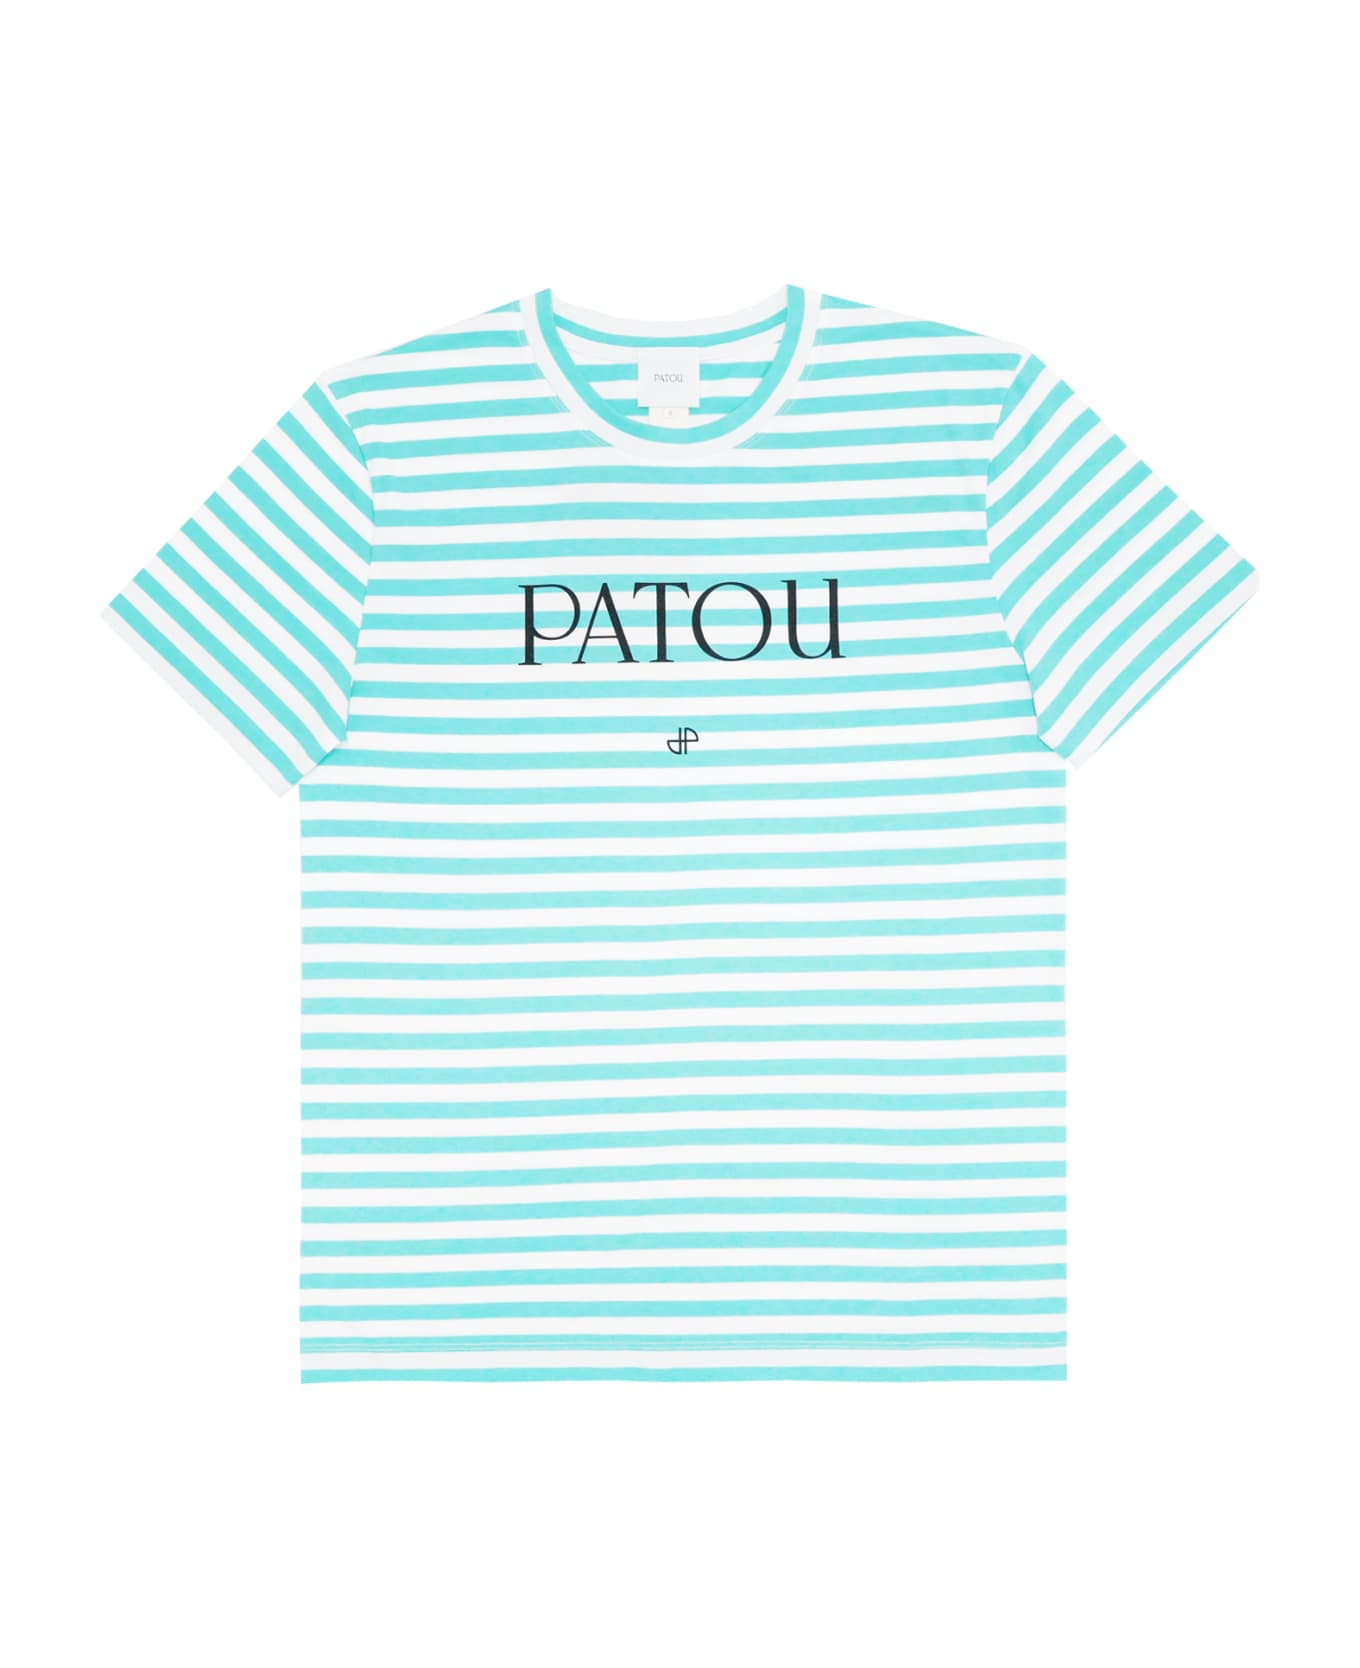 Patou T-shirt - Green Tシャツ